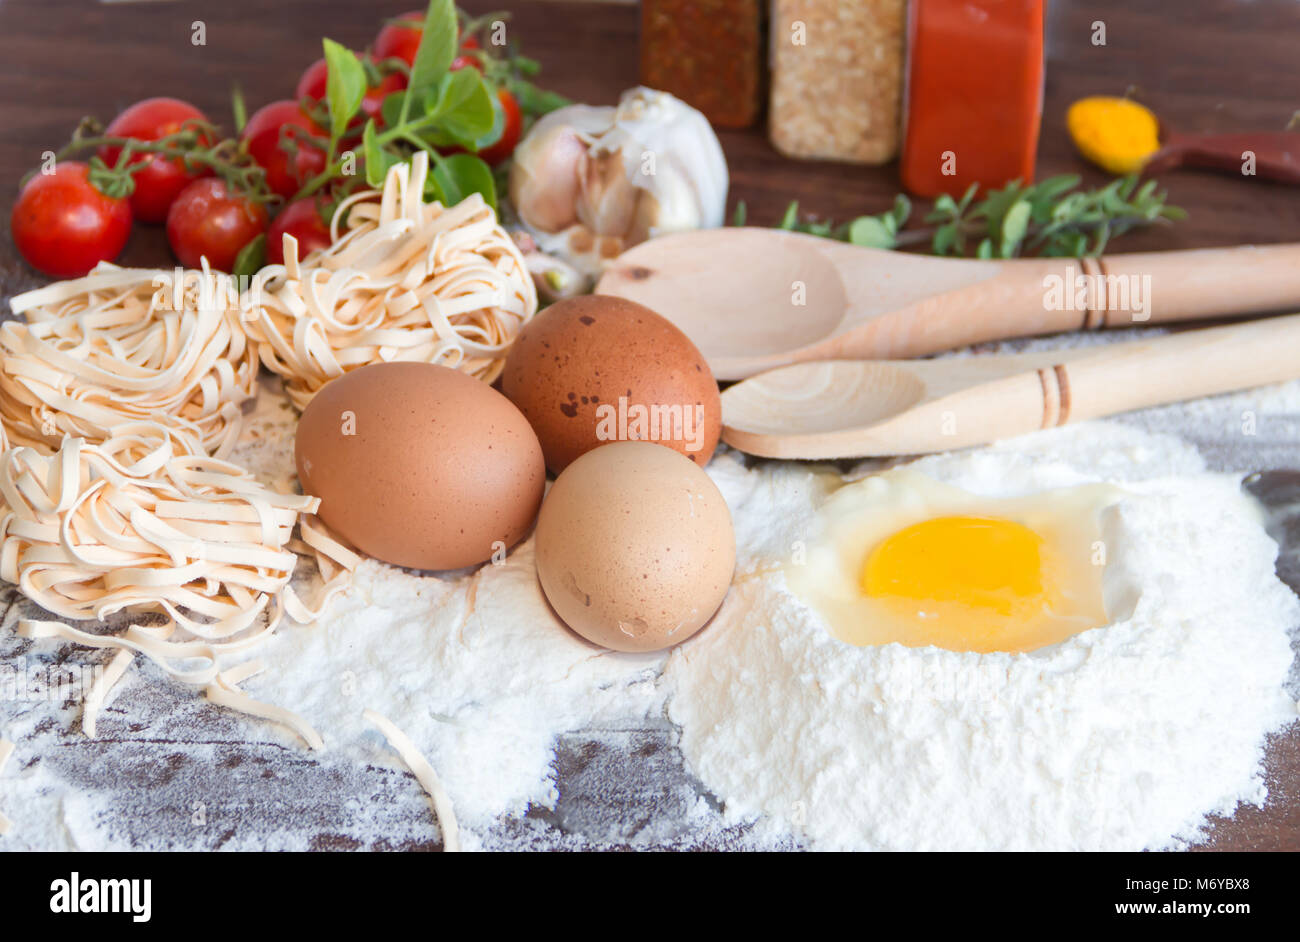 Ingredienti Preparazione spaghetti con uova, pomodori erbe e spezie Foto Stock